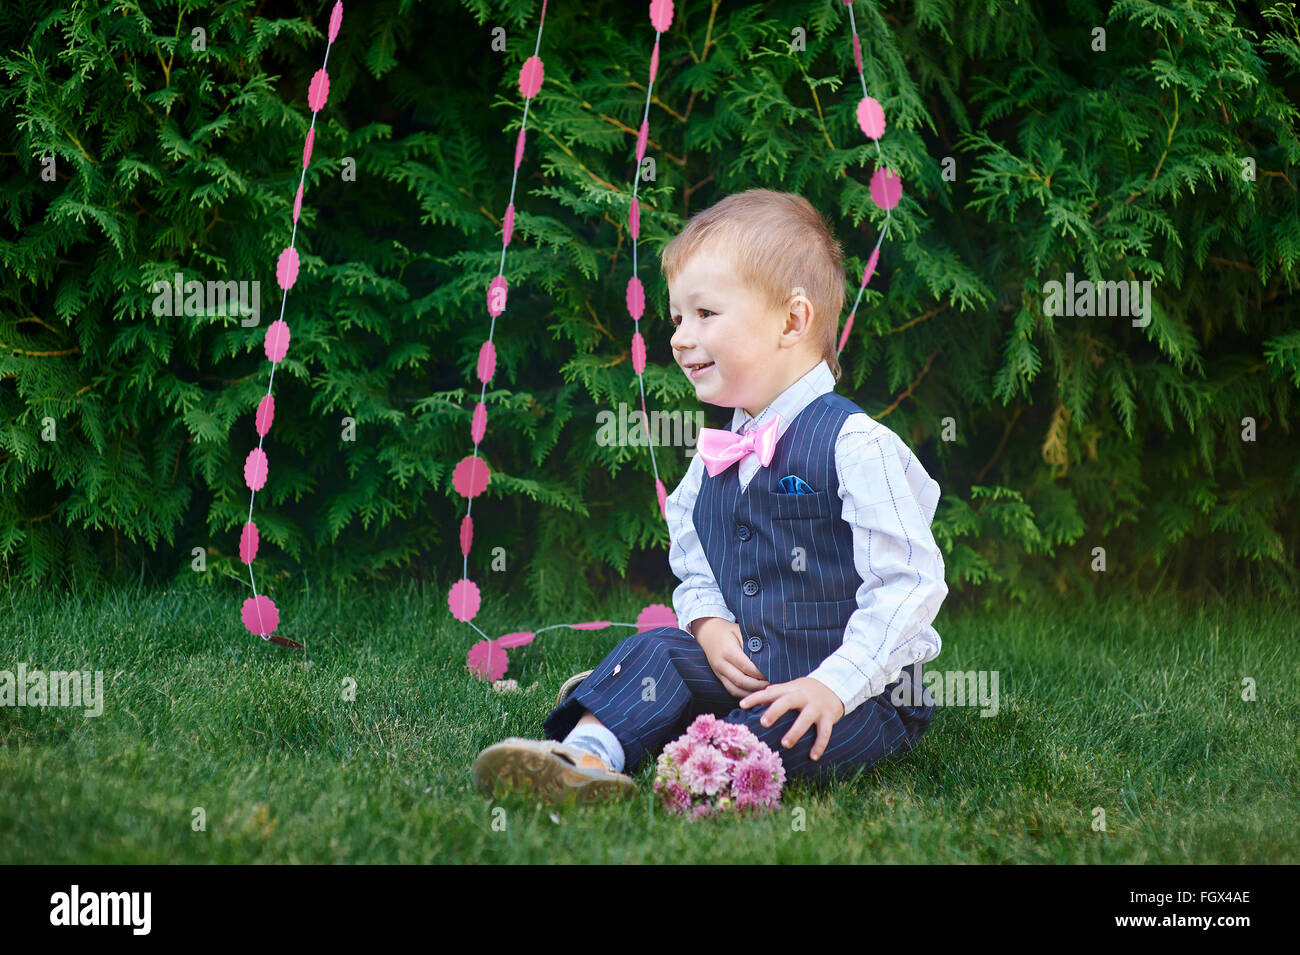 Little Boy in un vestito con un bouquet seduto sull'erba Foto Stock